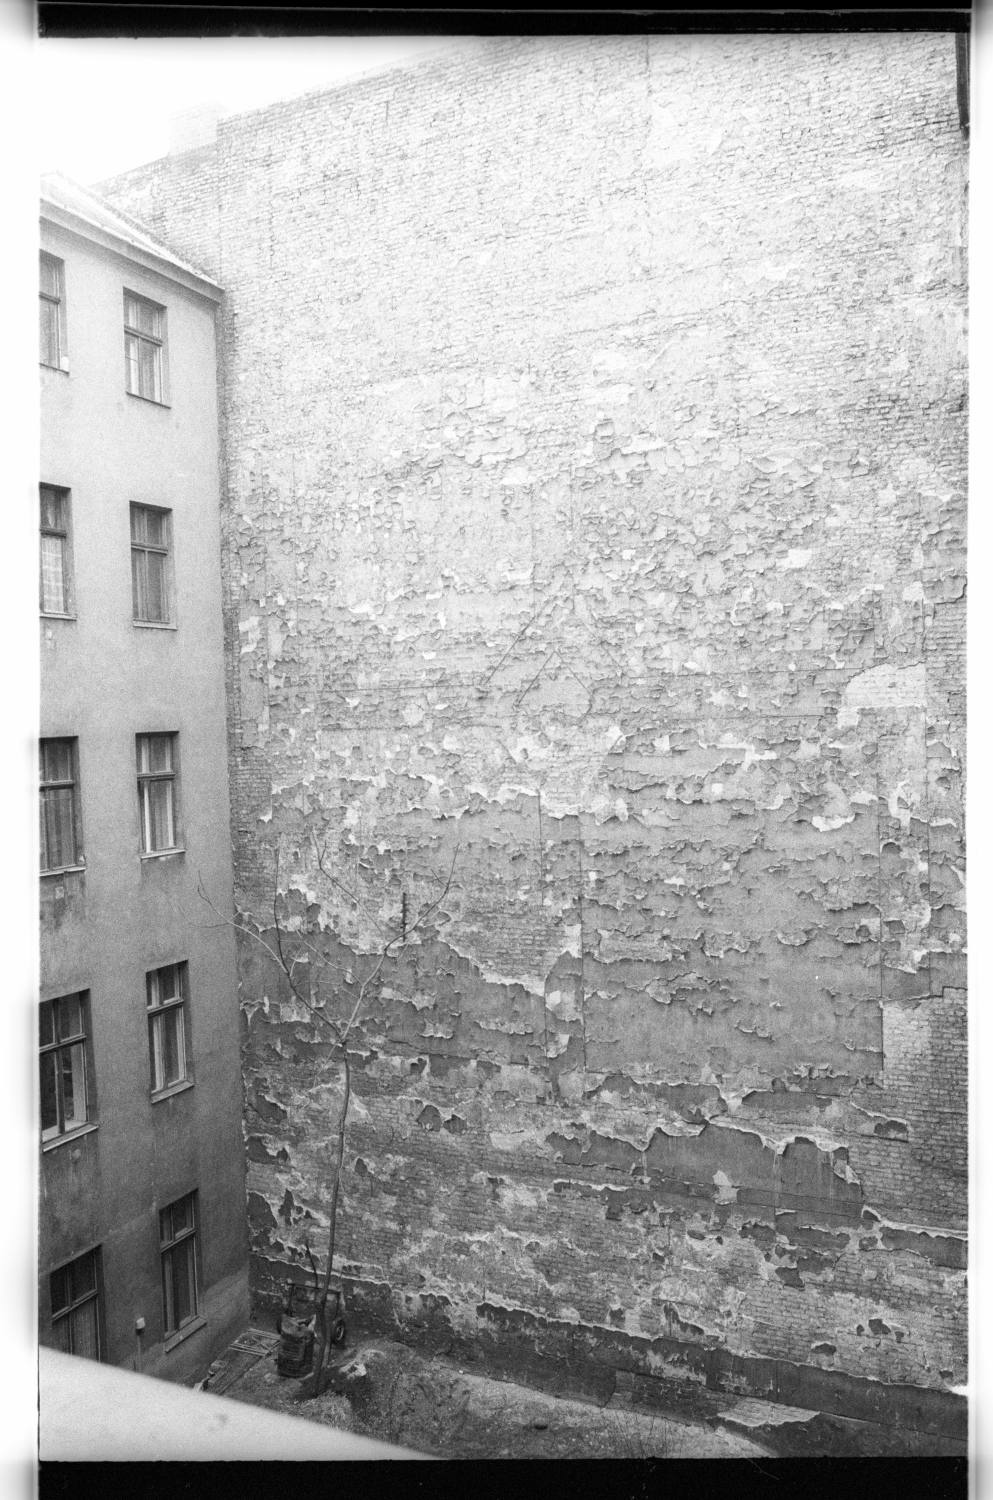 Kleinbildnegative: Hinterhof, Belziger Straße 24, 1979 (Museen Tempelhof-Schöneberg/Jürgen Henschel RR-F)